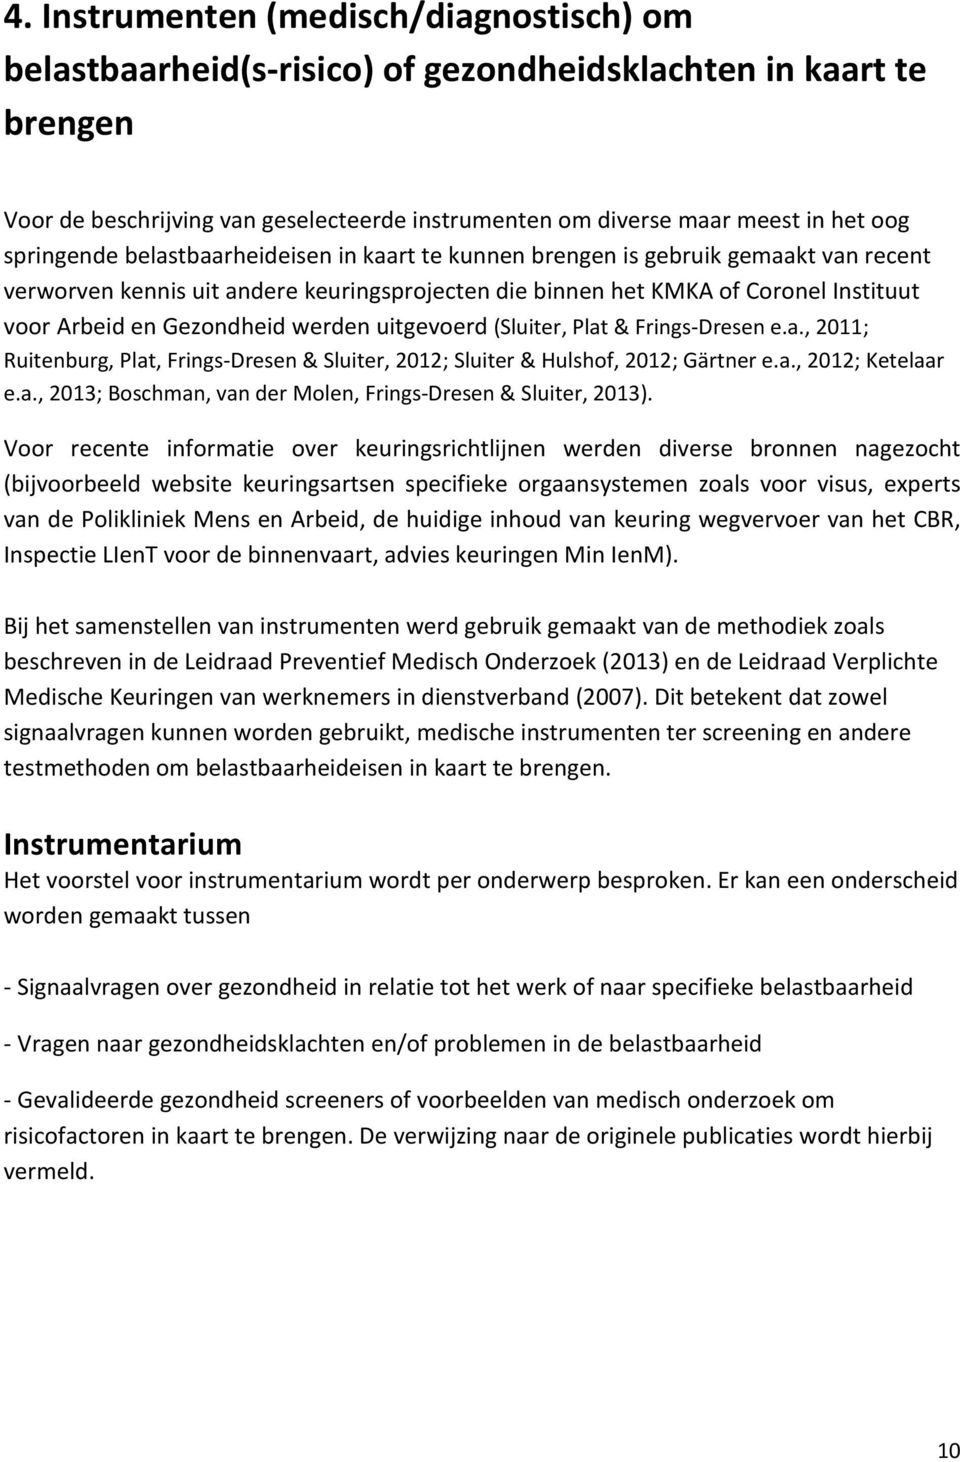 Gezondheid werden uitgevoerd (Sluiter, Plat & Frings-Dresen e.a., 2011; Ruitenburg, Plat, Frings-Dresen & Sluiter, 2012; Sluiter & Hulshof, 2012; Gärtner e.a., 2012; Ketelaar e.a., 2013; Boschman, van der Molen, Frings-Dresen & Sluiter, 2013).